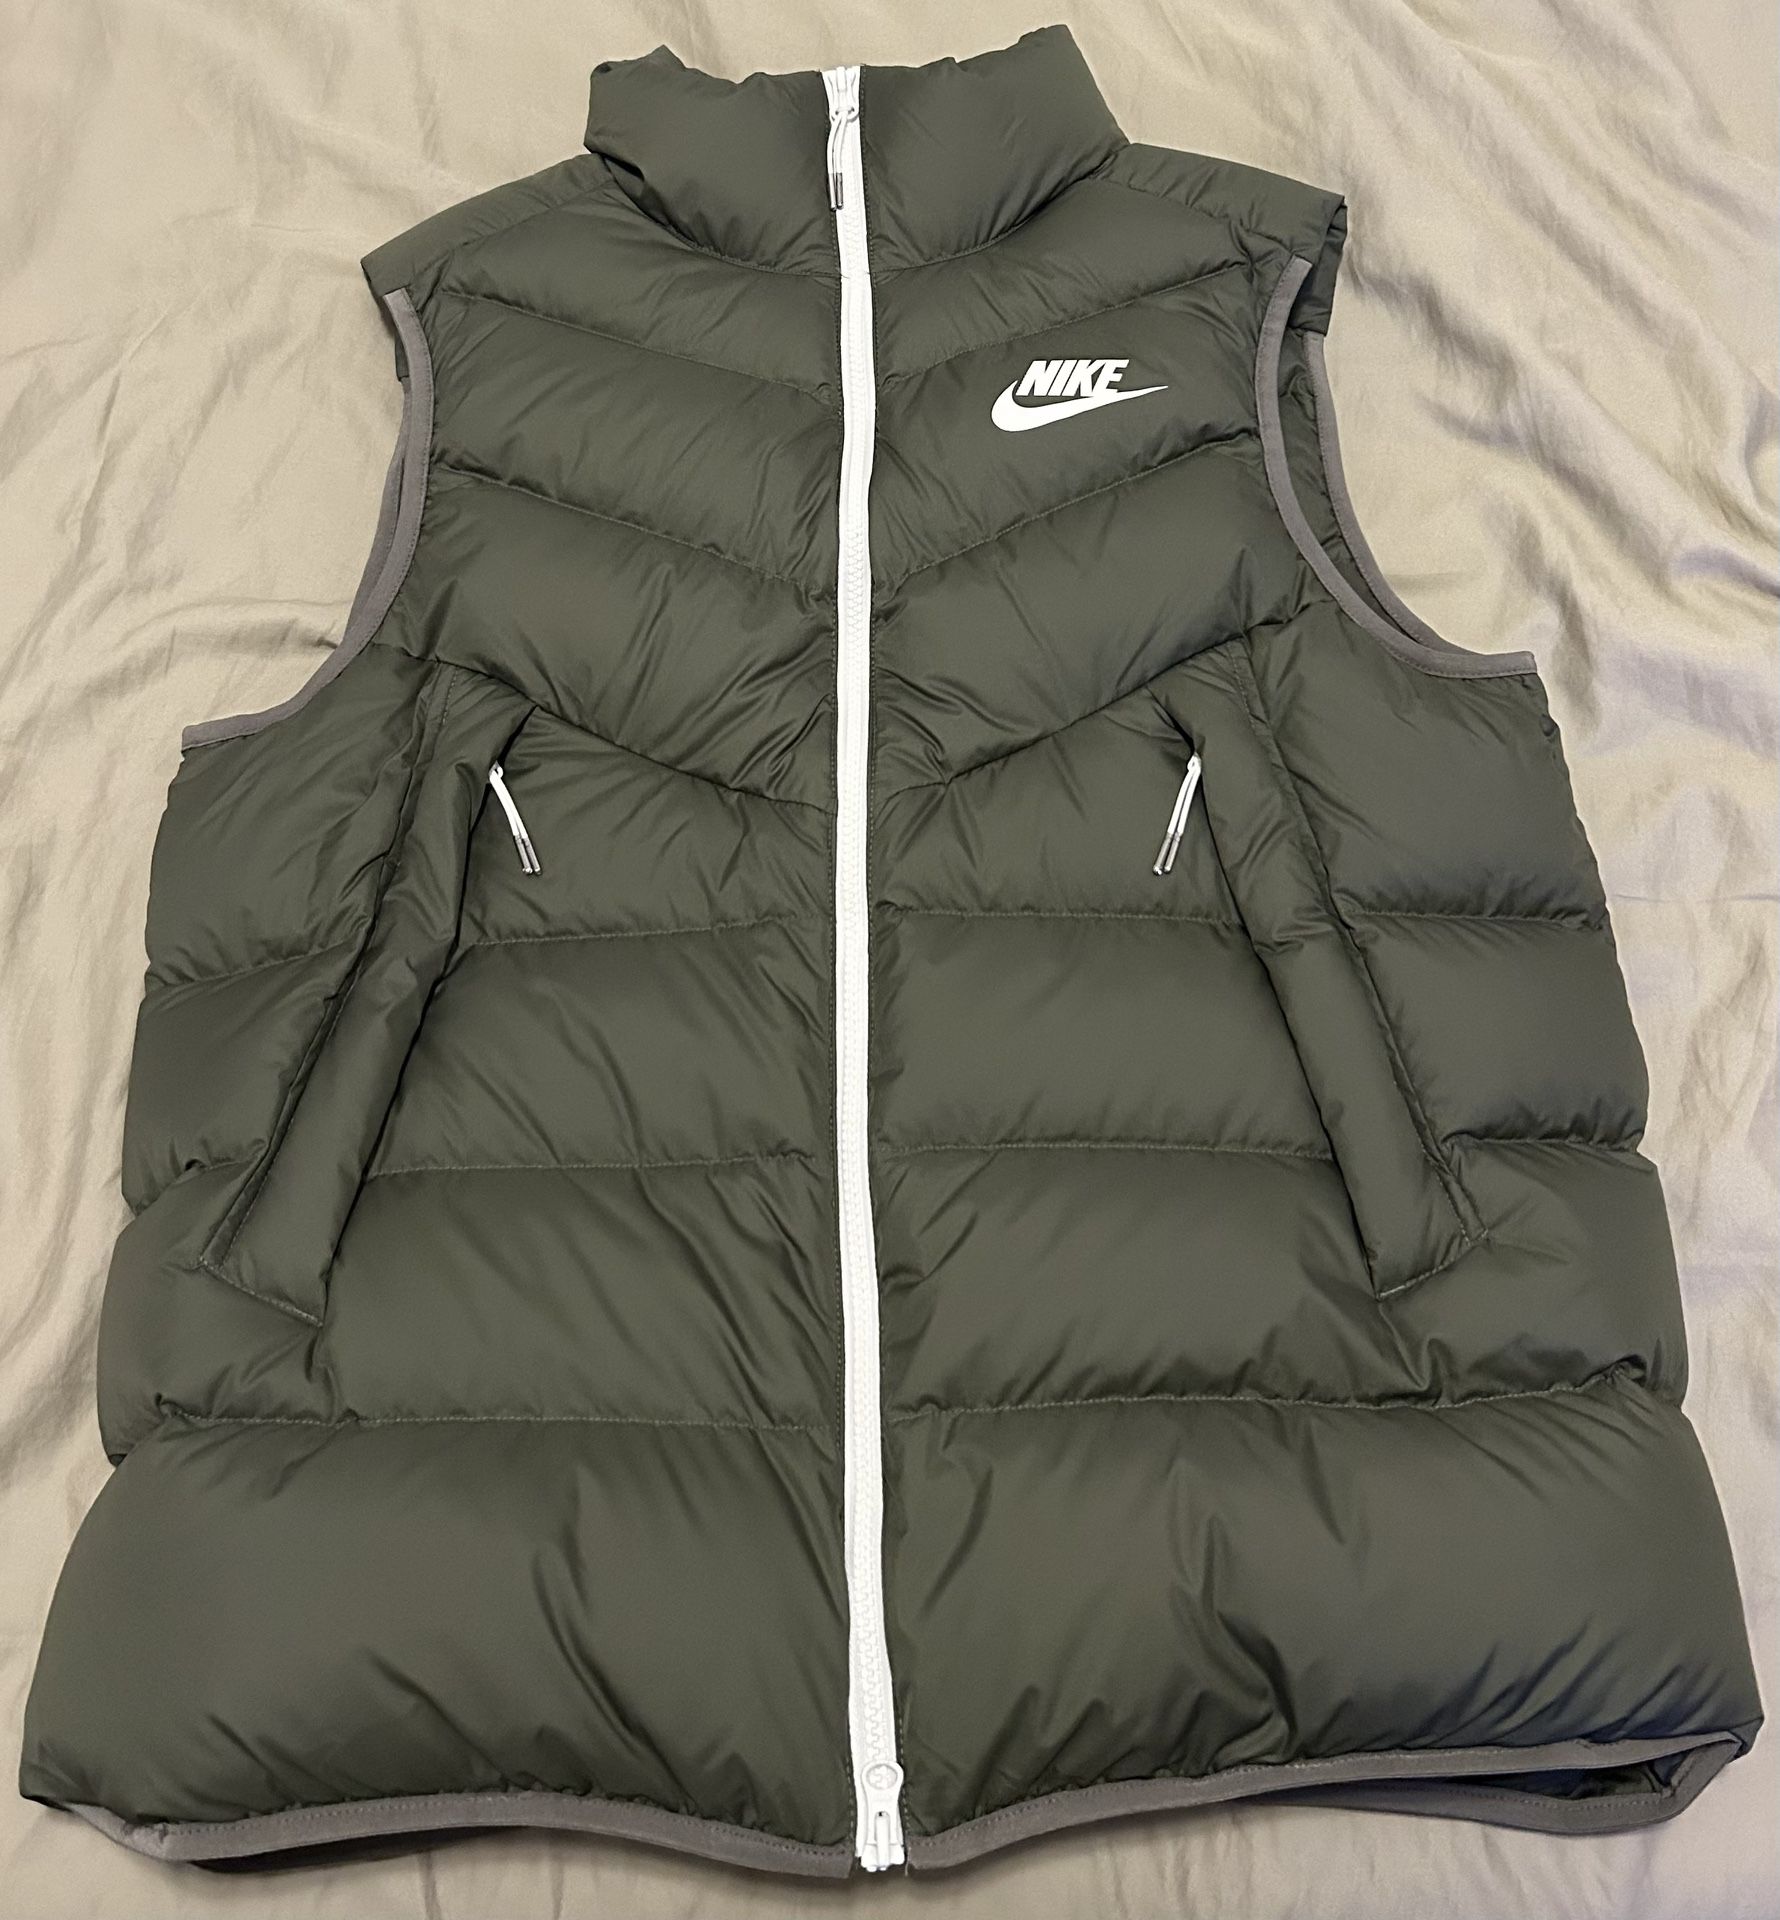 BRAND NEW Nike Men’s Puffer Vest